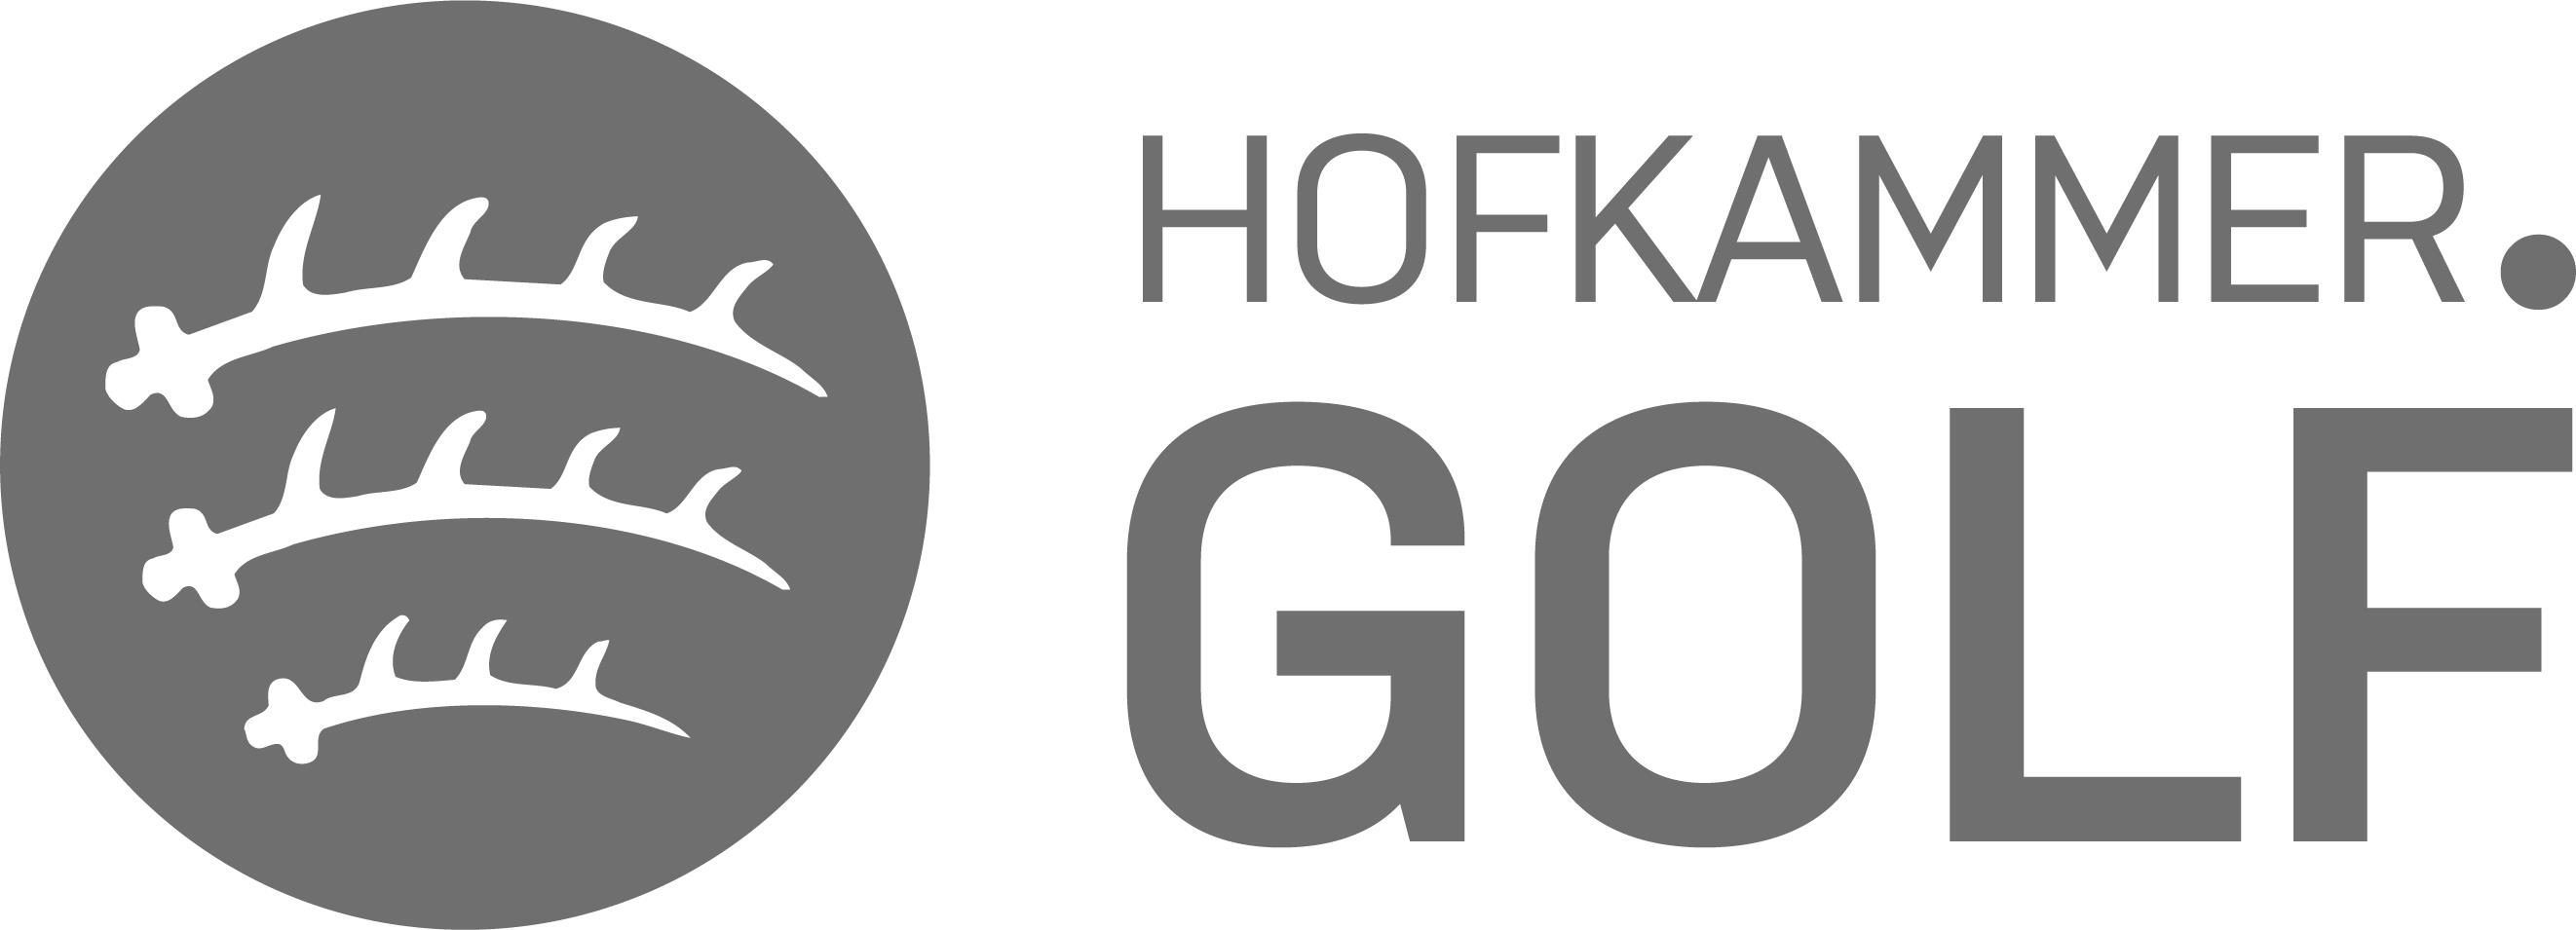 HK GOLF Logo final.jpg